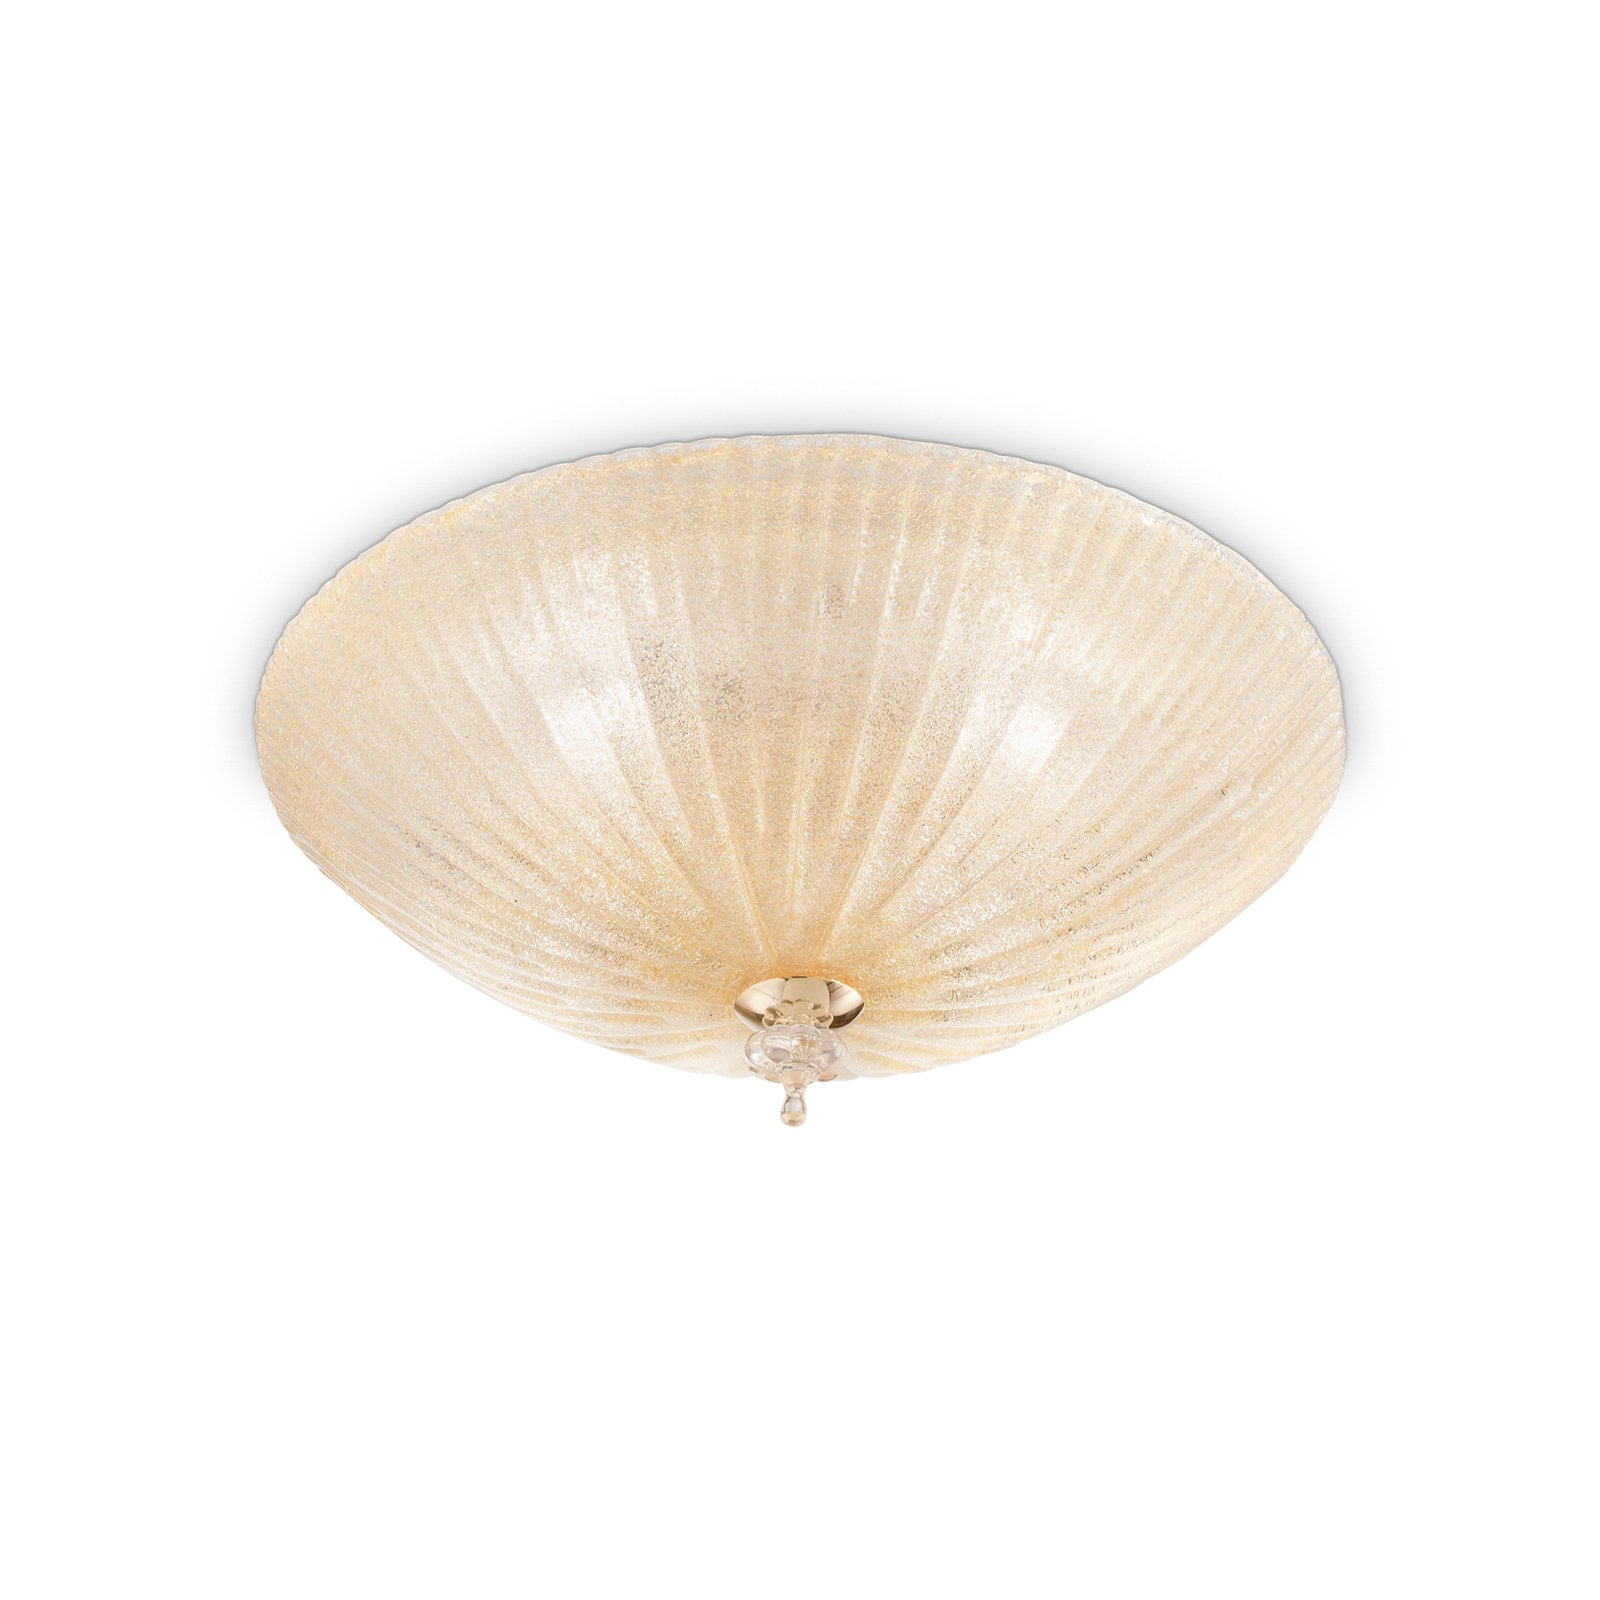 Ideal Lux Shell mennyezeti lámpa, borostyán színű, üveg, Ø 50 cm